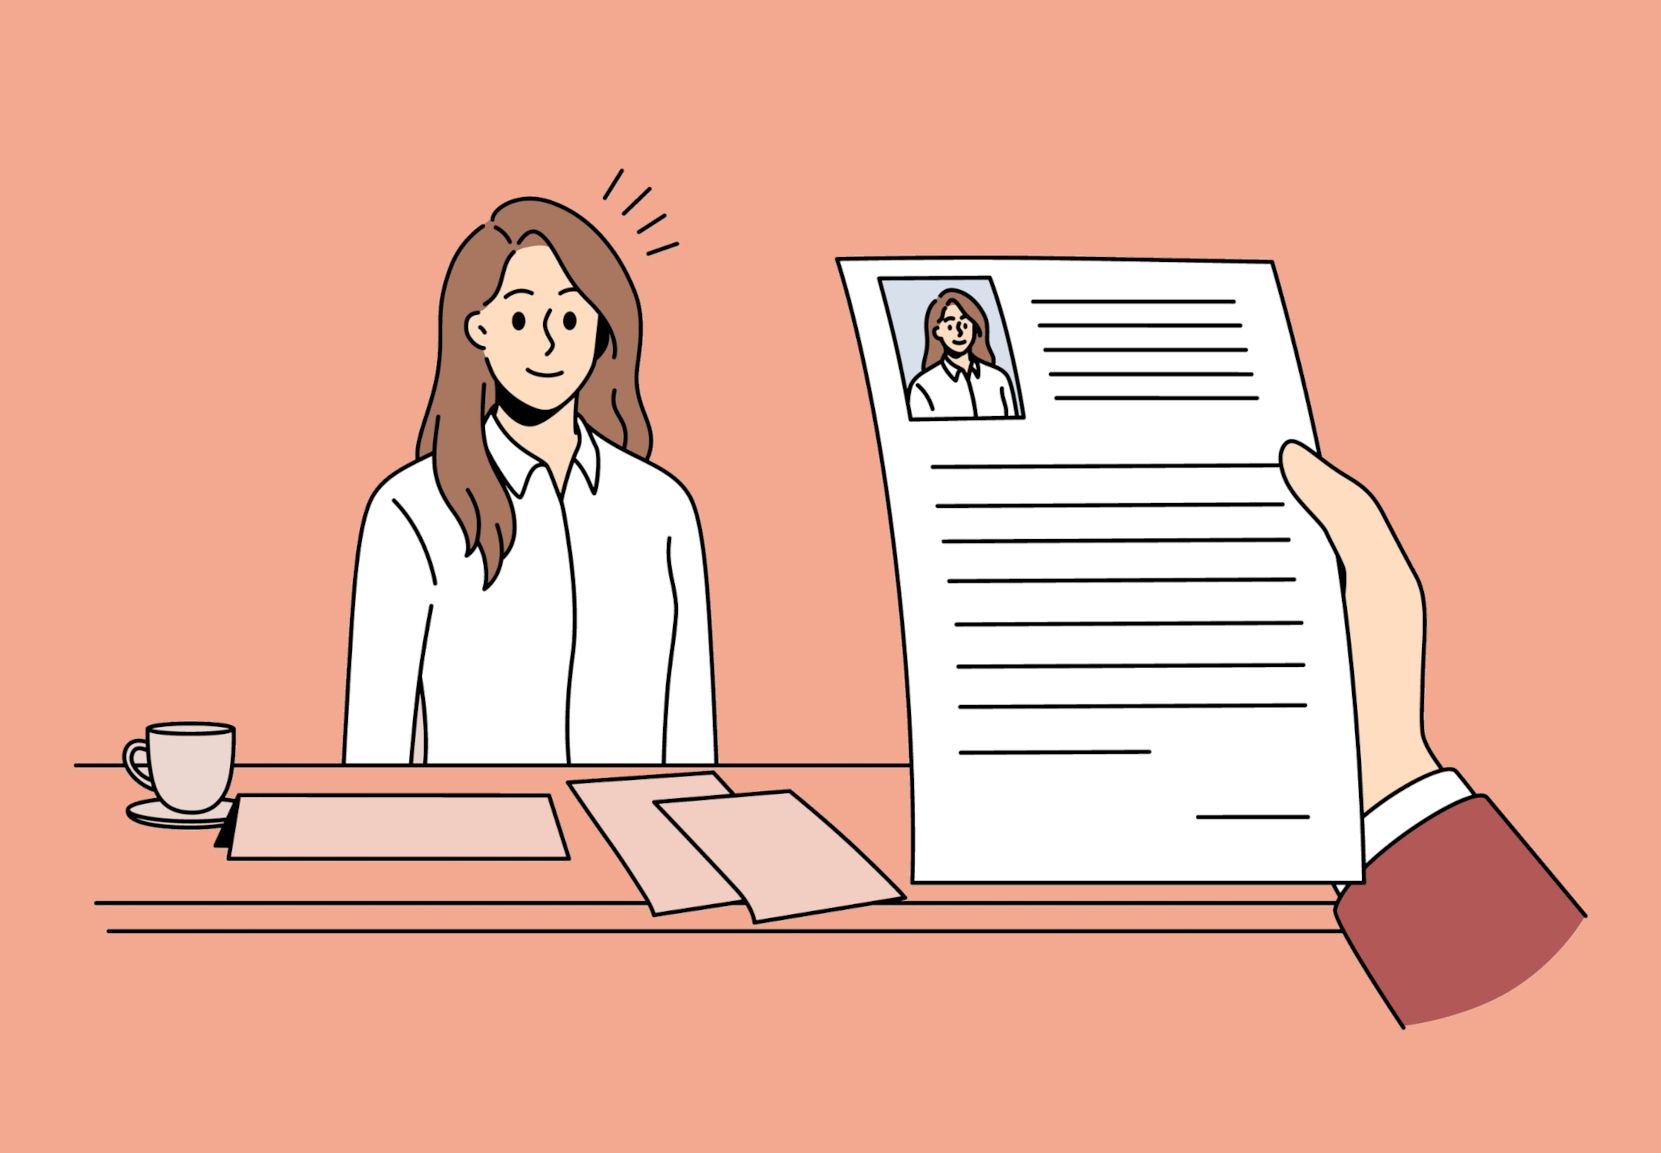 Illustration, hvor en ung kvinde sidder til en jobsamtale. I udkanten af tegningen ses en hånd, der holder hendes ansøgning eller cv.